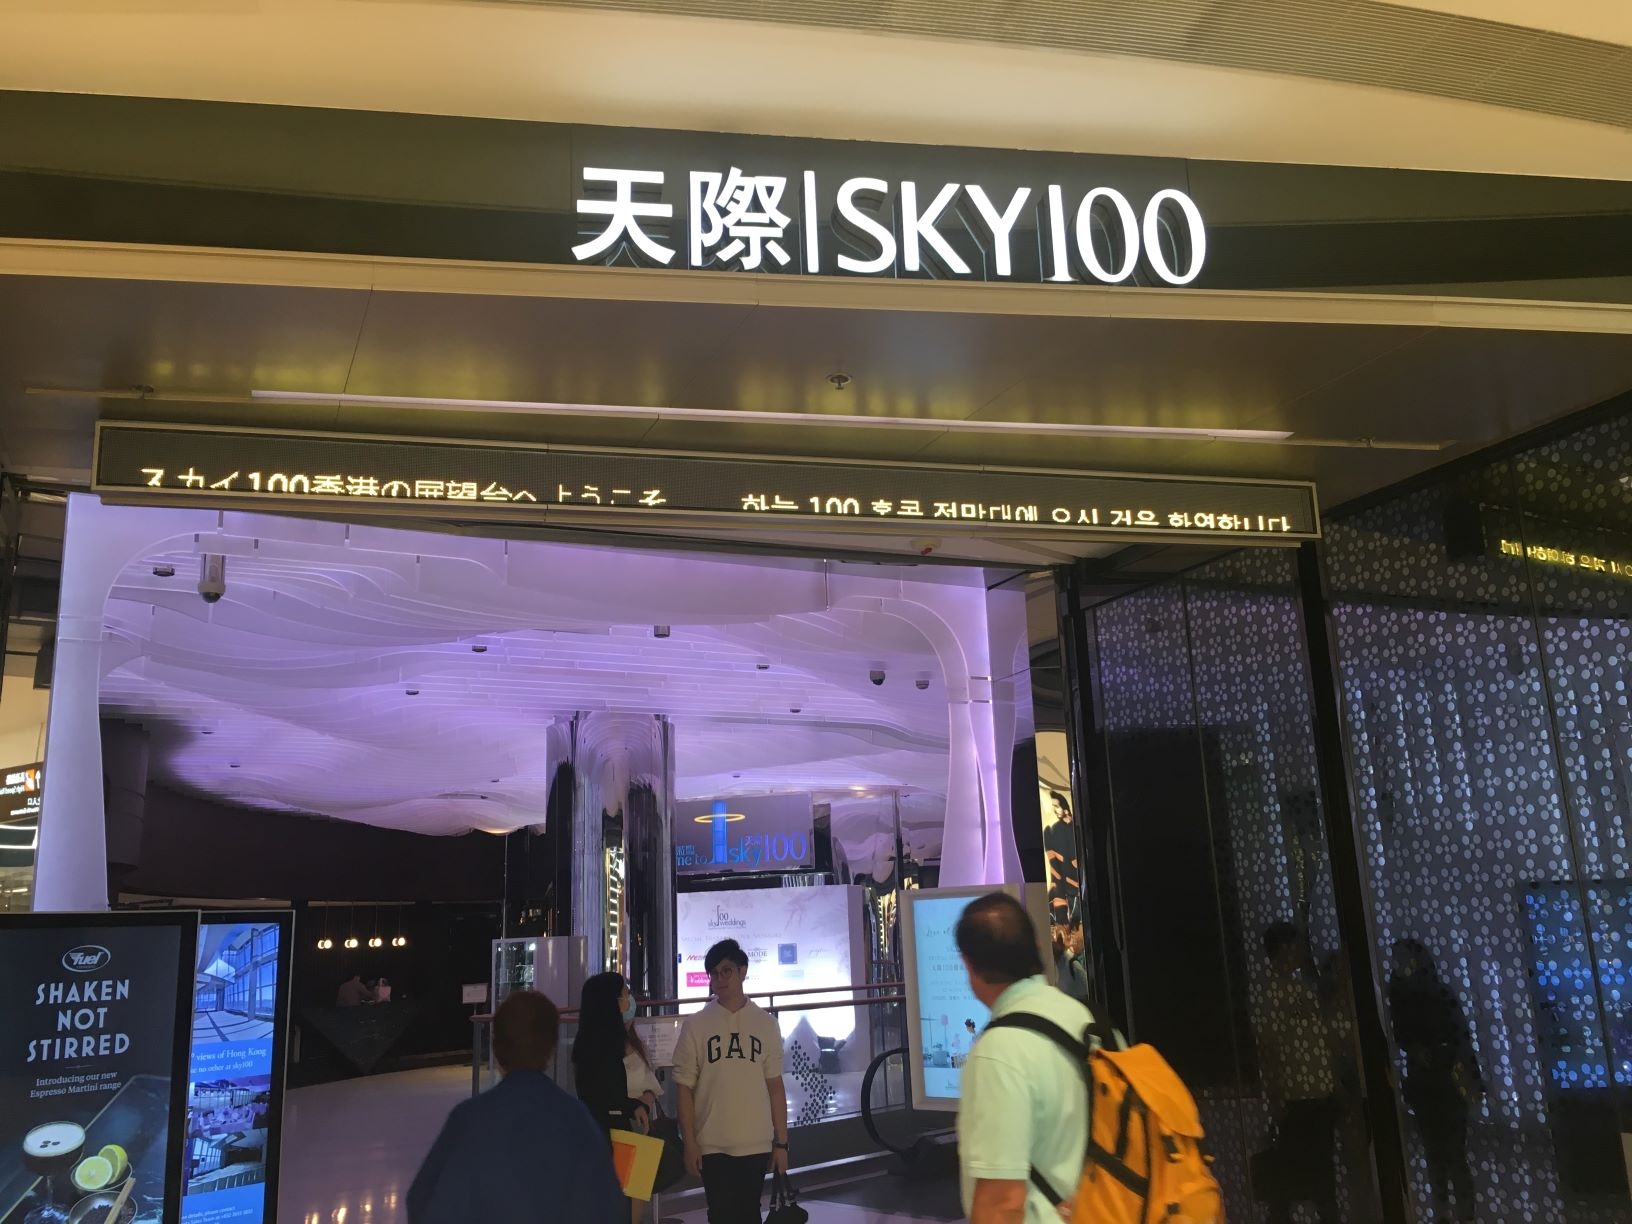 Sky 100